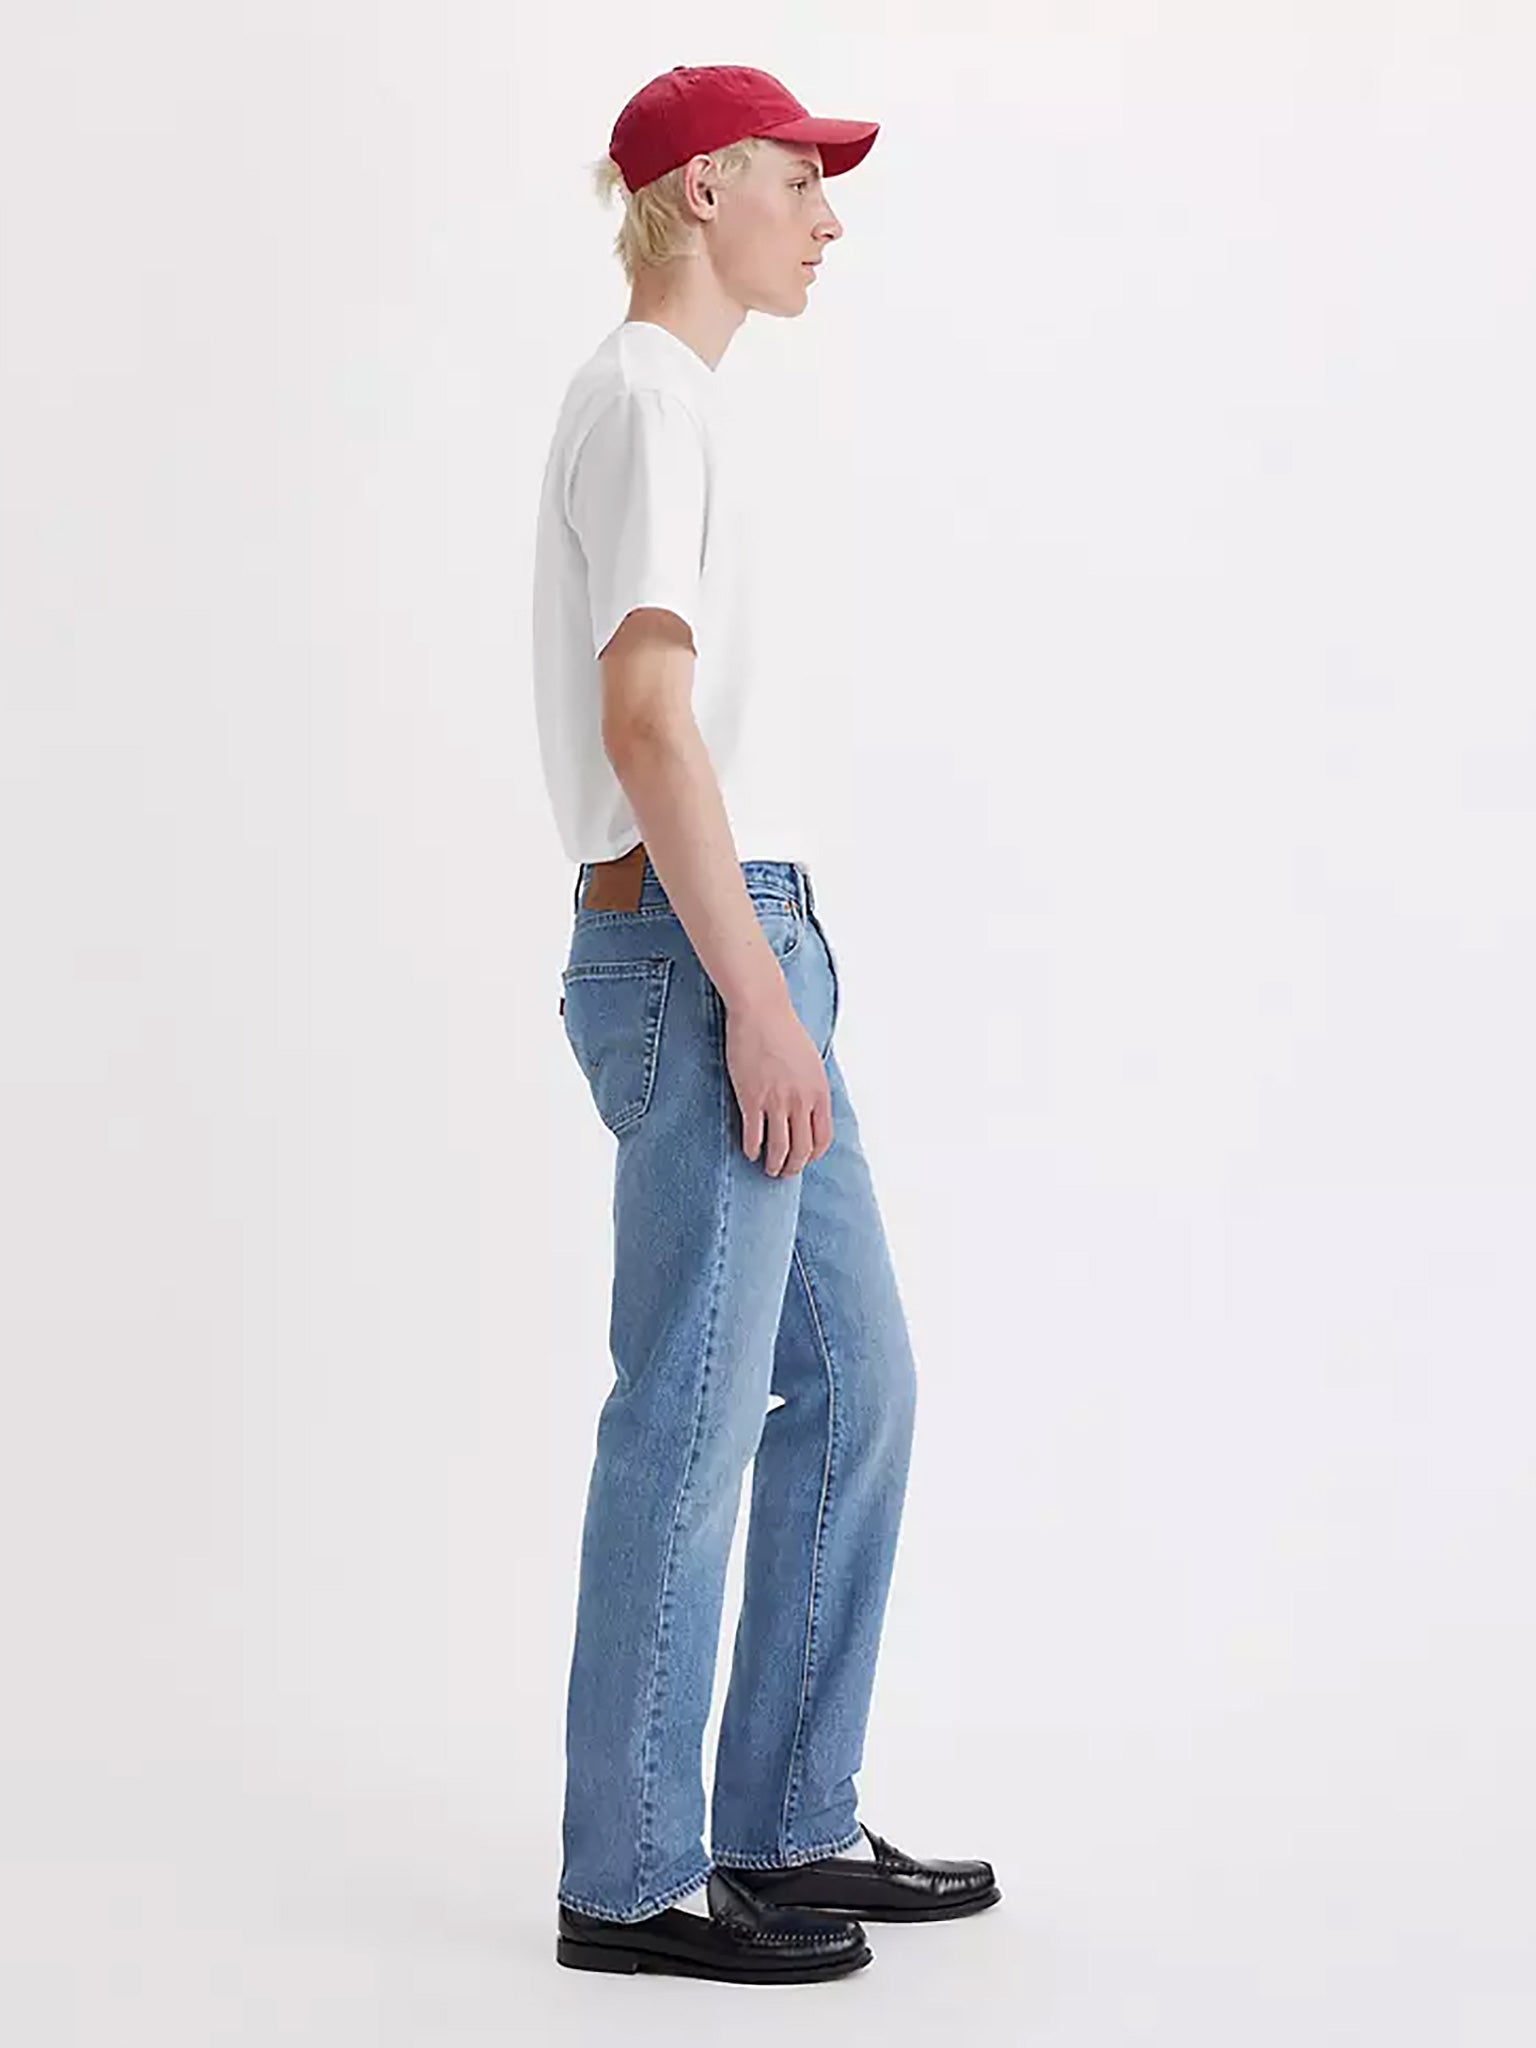 Ανδρικό παντελόνι τζιν Levi's® 501® Original Jeans 005013504 | 005013504